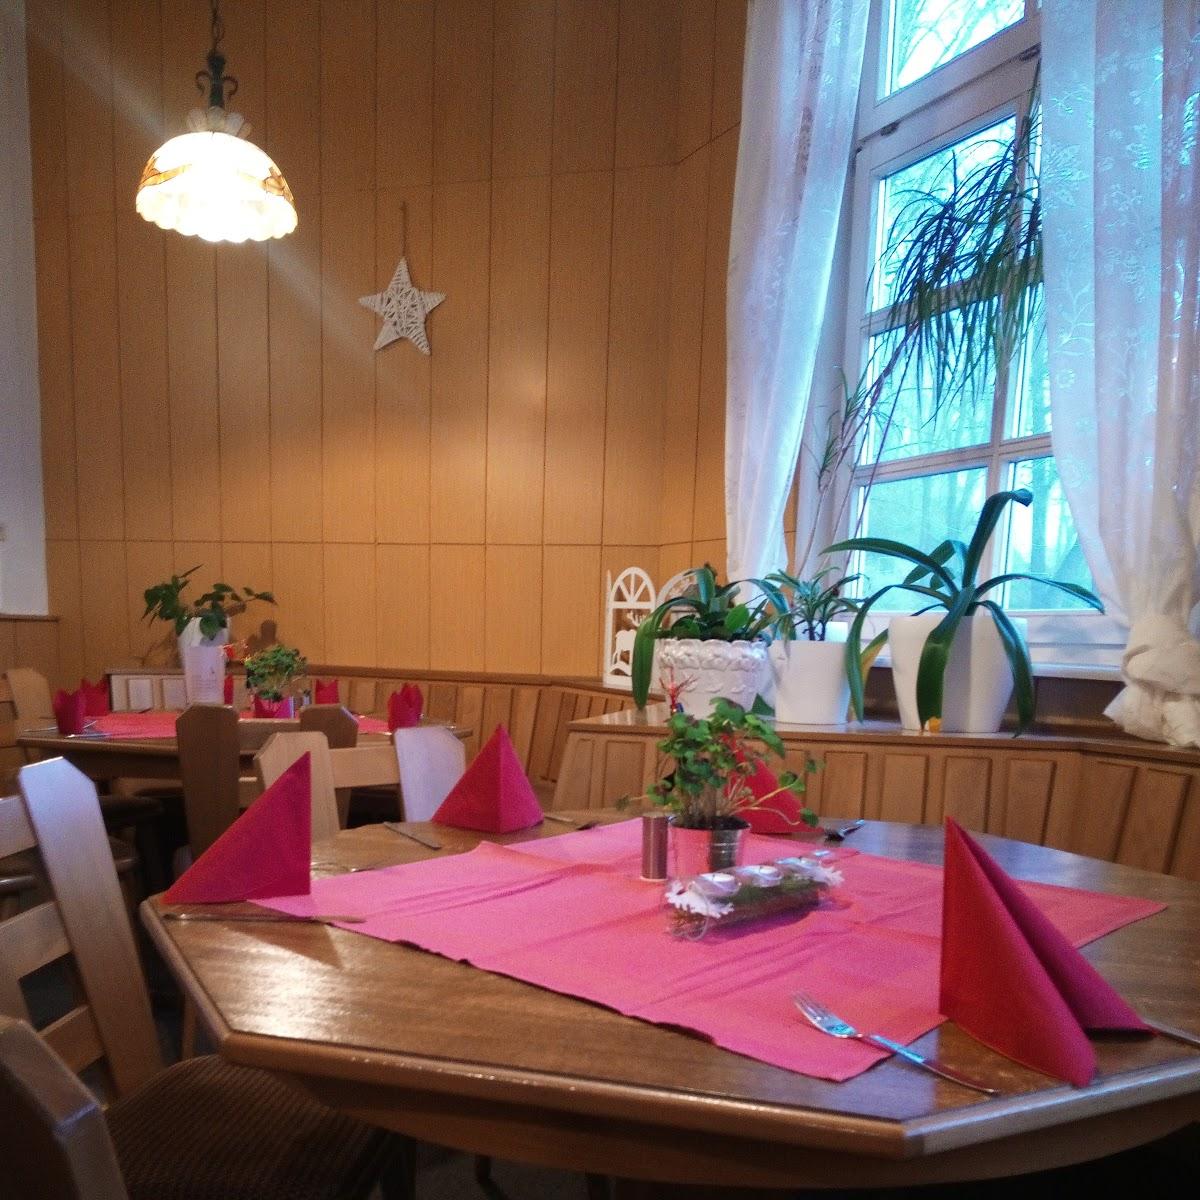 Restaurant "Gaststätte Barbarossahöhle" in Kyffhäuserland